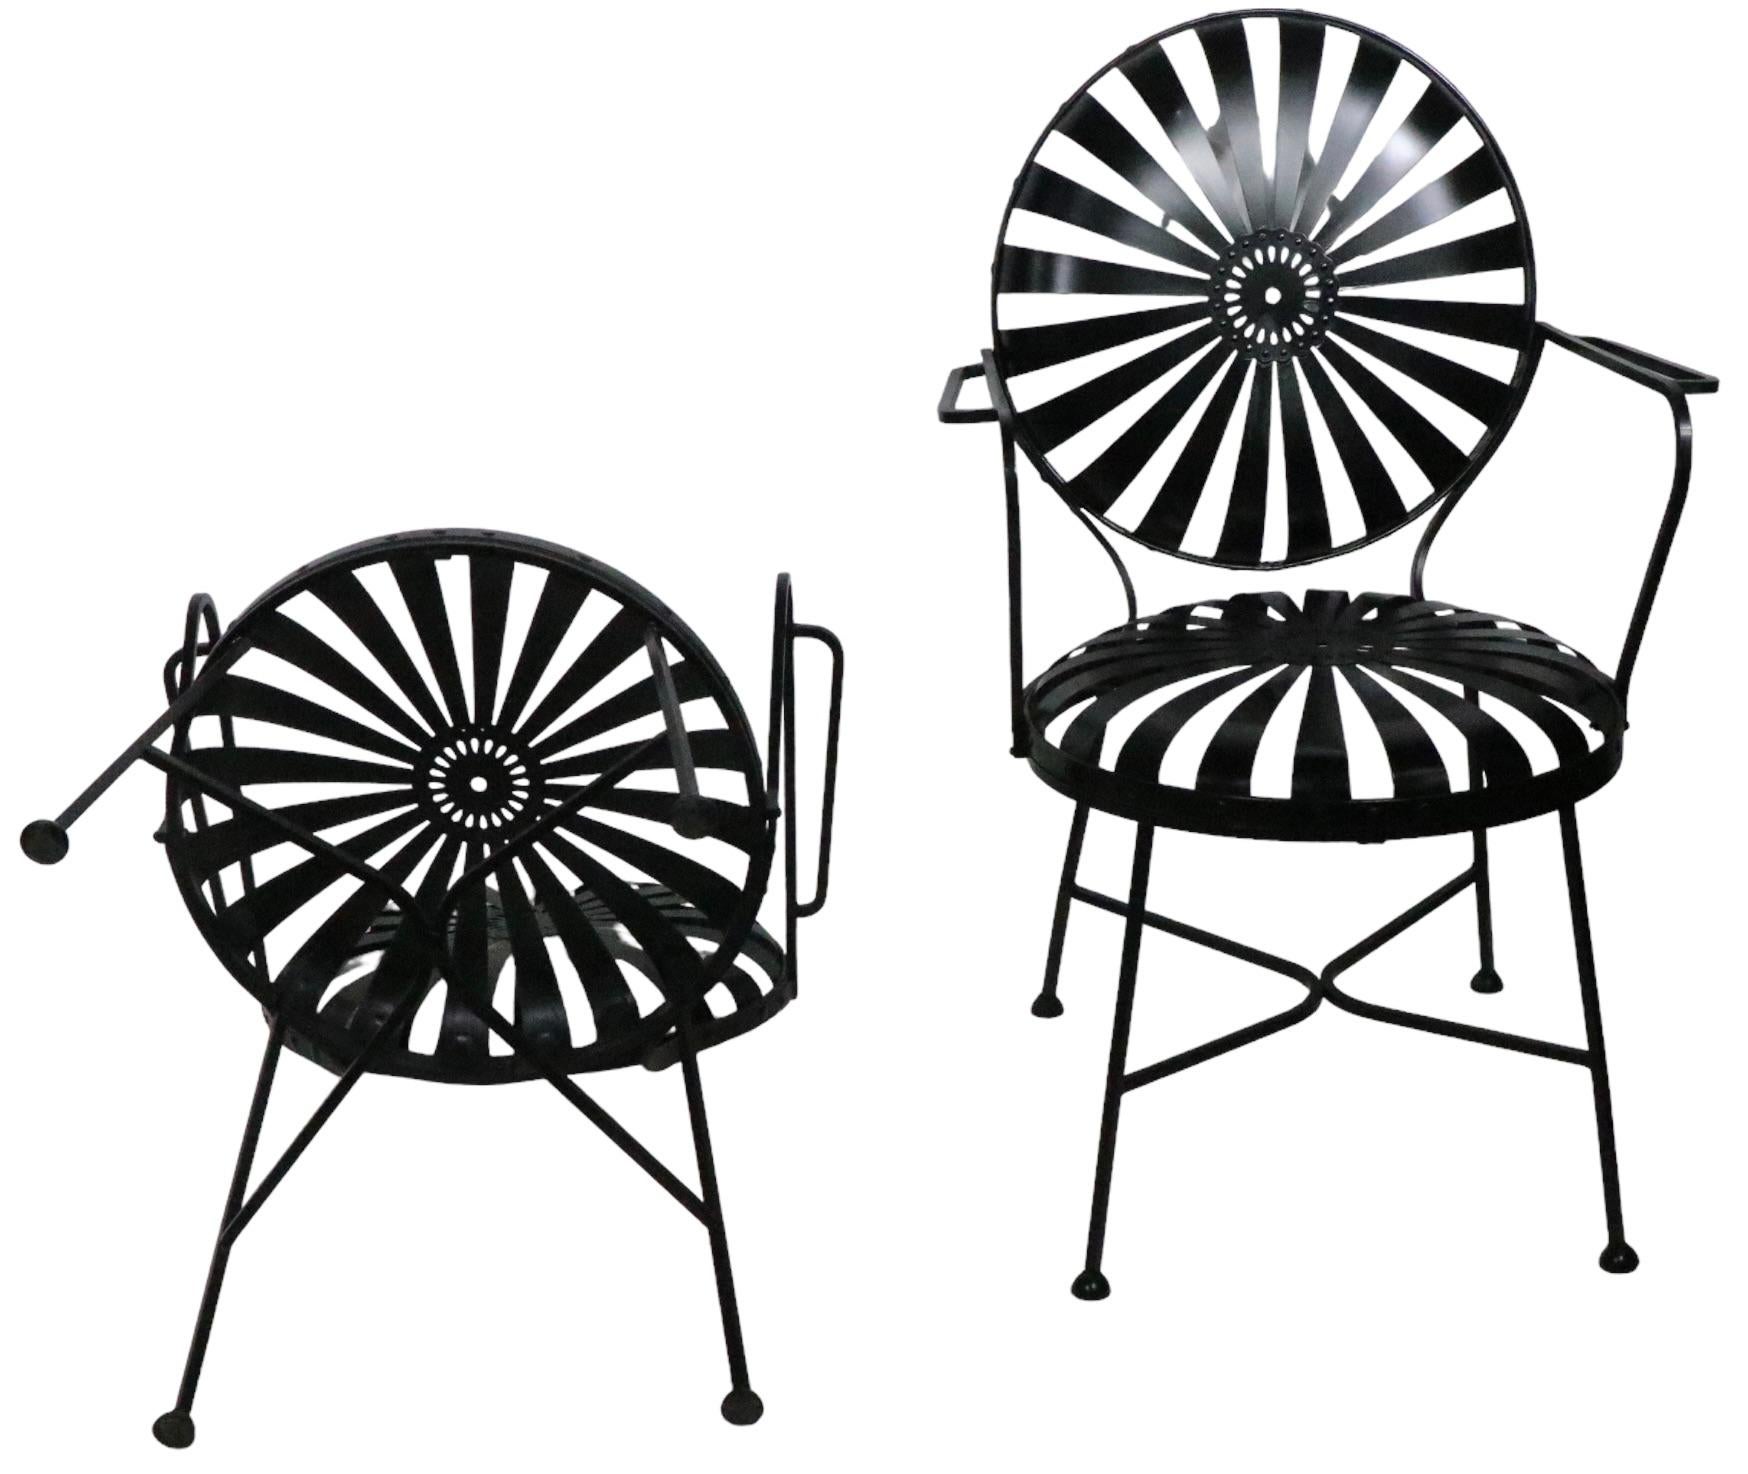 Außergewöhnliches Paar Vintage-Federstühle, entworfen von Francois Carre, hergestellt von The Troy Sunshade Company um 1930/1940er Jahre. Die ursprüngliche Carrs-Version dieses Stuhls wurde in Frankreich hergestellt. Die Troy Sunshade Company erwarb